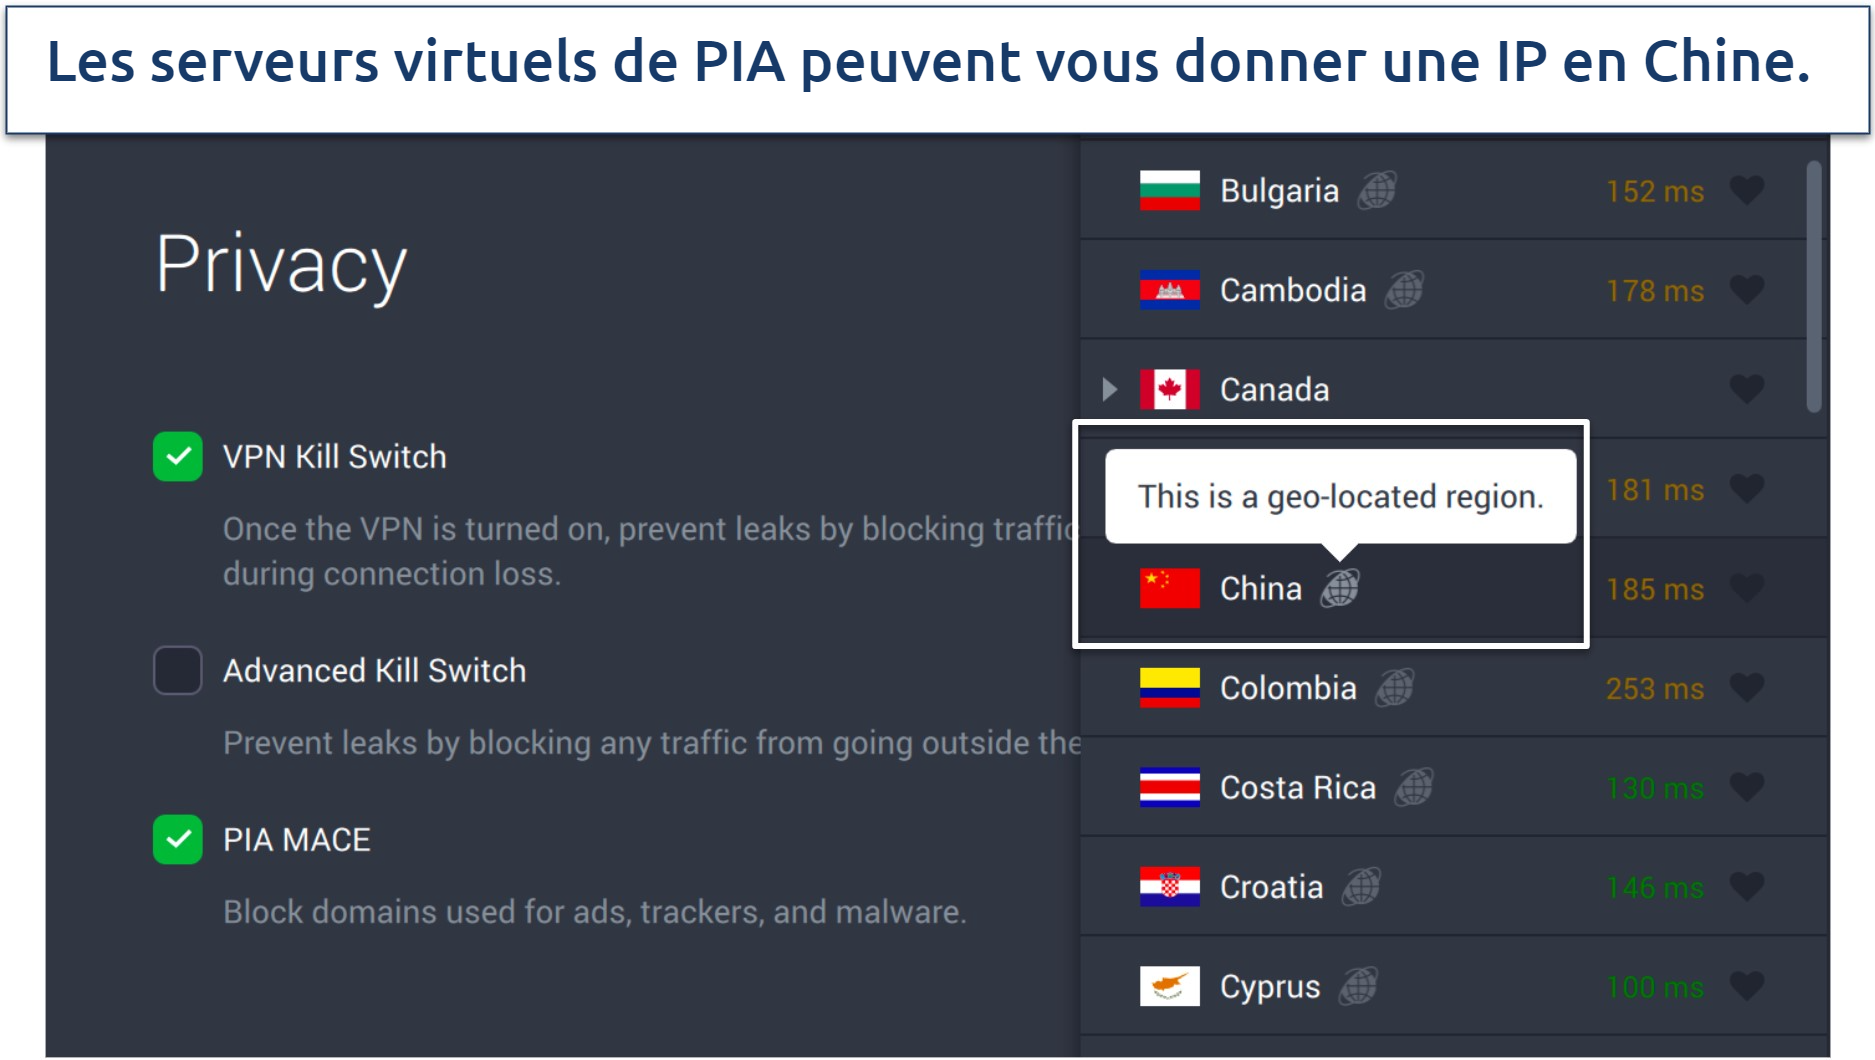 Capture d’écran des paramètres de confidentialité de PIA et des serveurs virtuels dans l’application